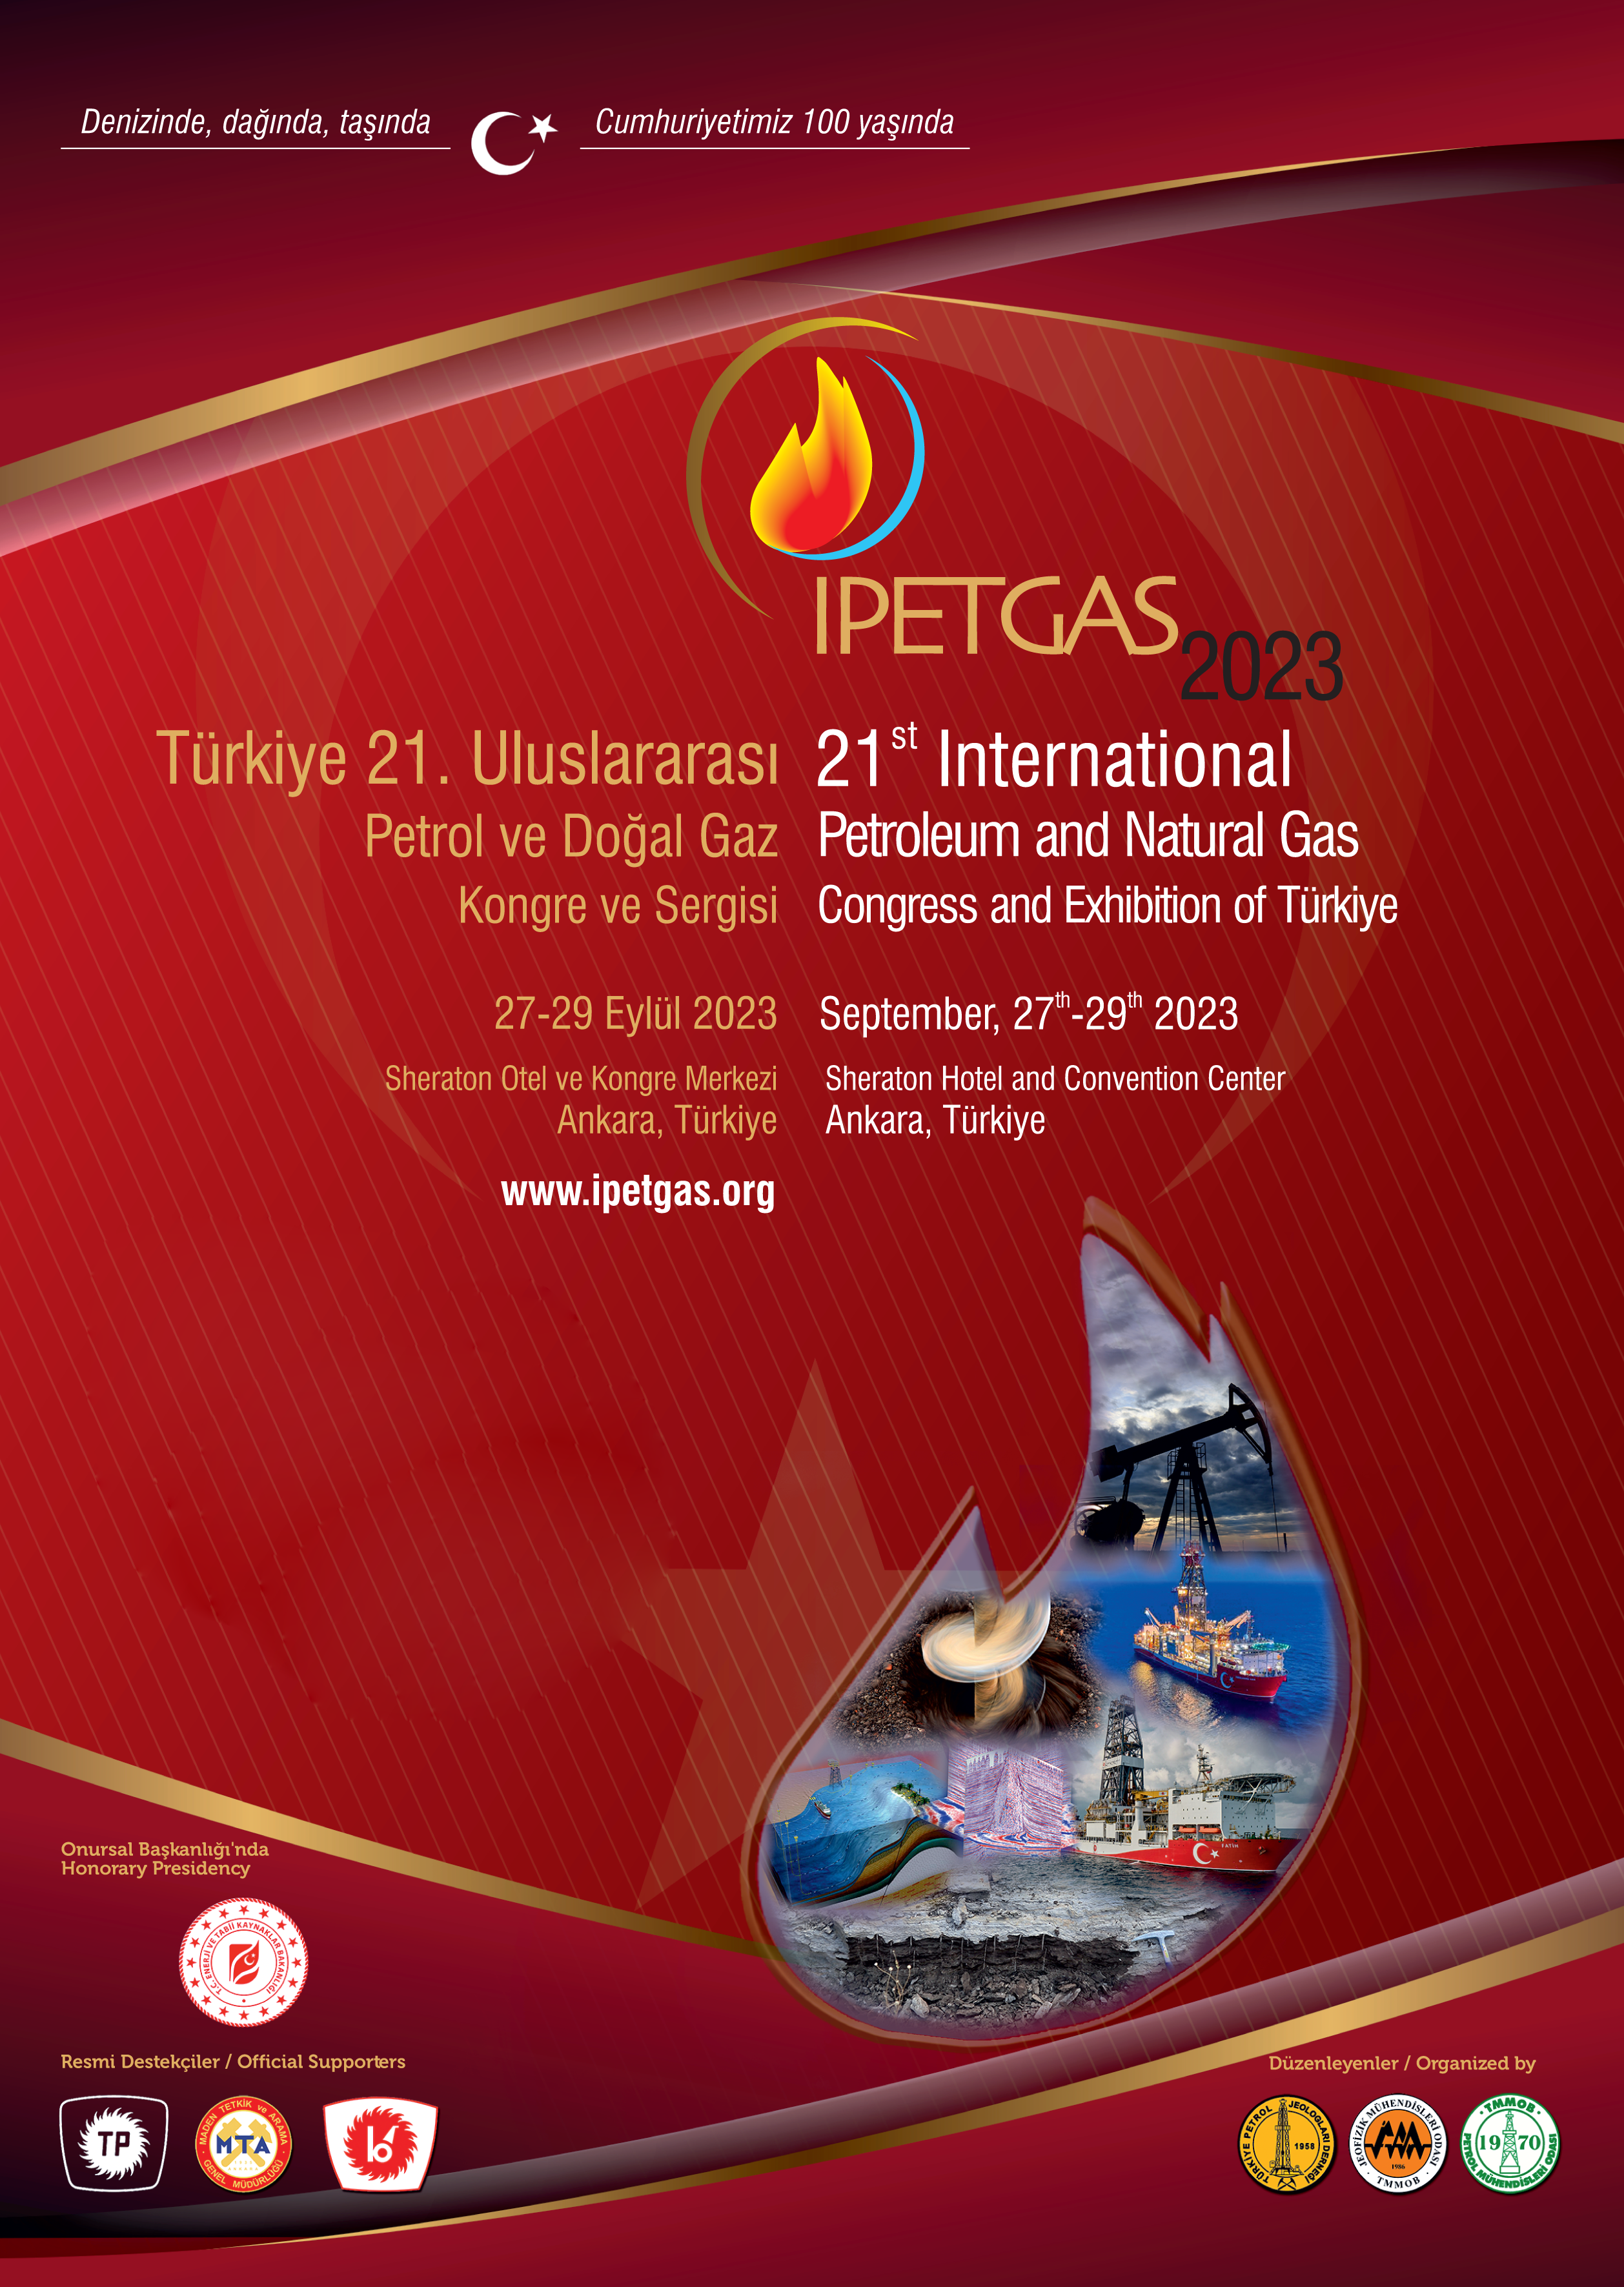 Türkiye 21.Uluslararası Petrol ve Doğal Gaz Kongre ve Sergisi (IPETGAS 2023),  27-29 Eylül 2023  Ankara